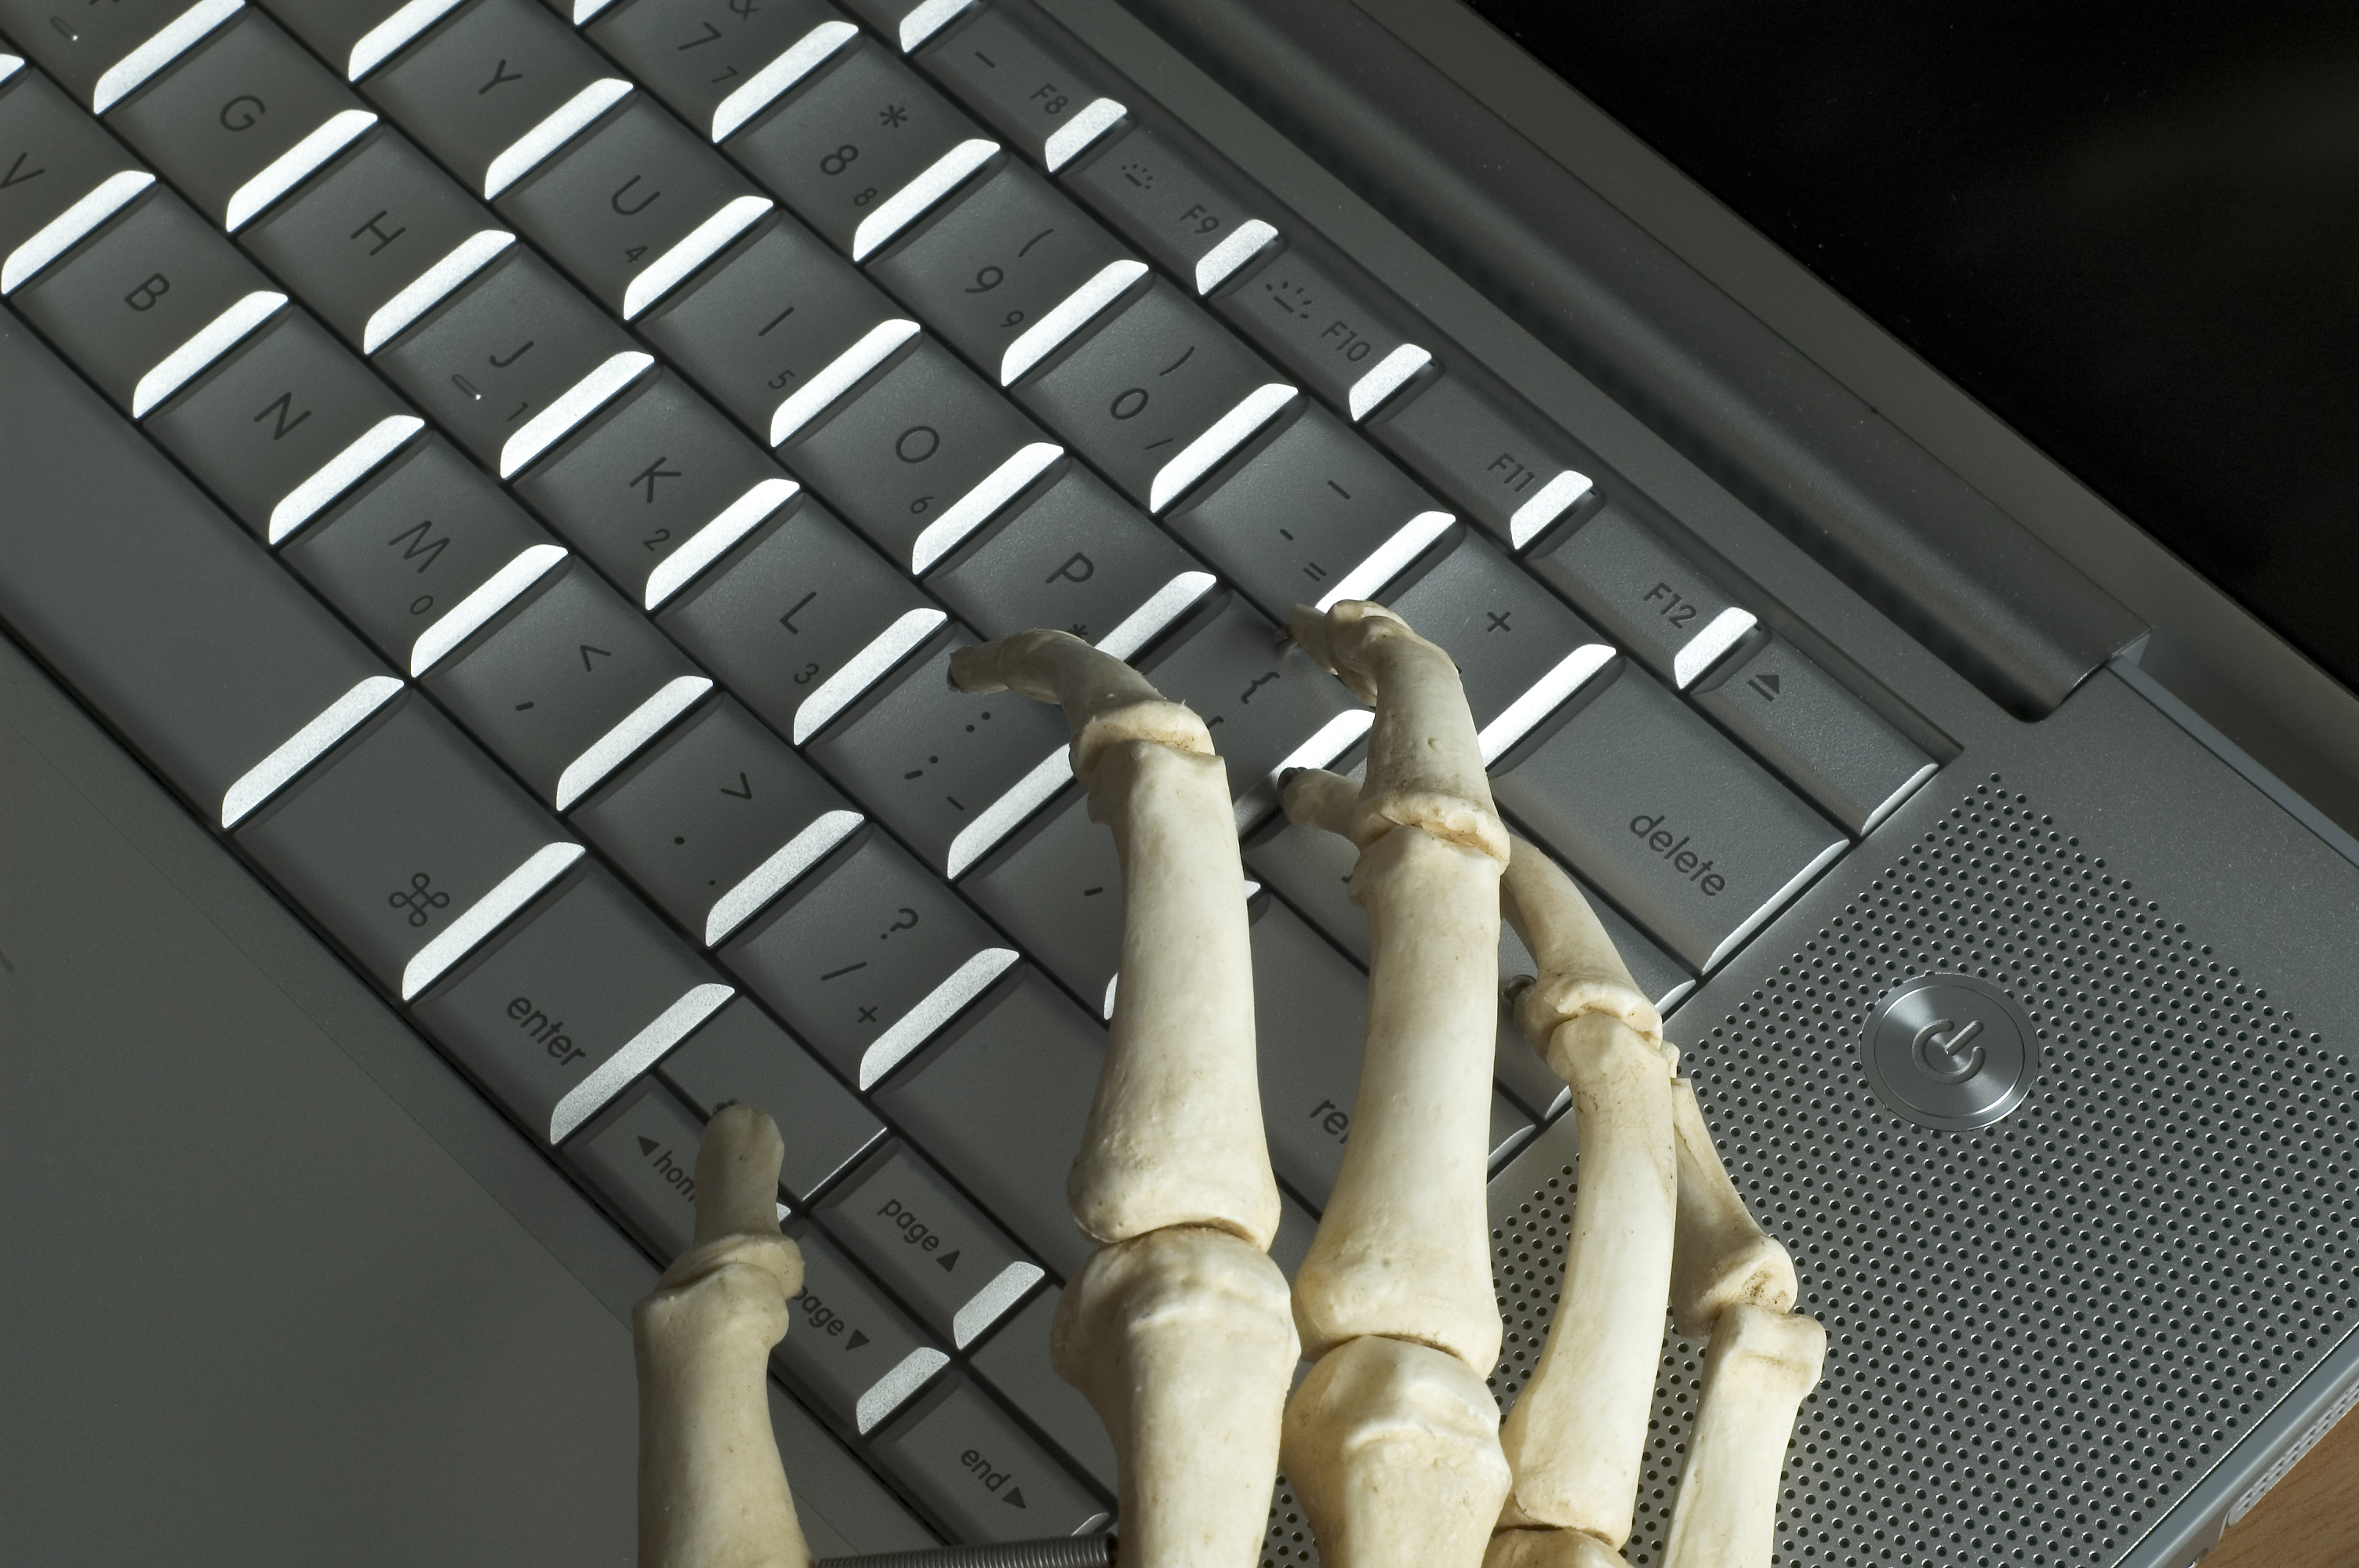 Skeletal hands